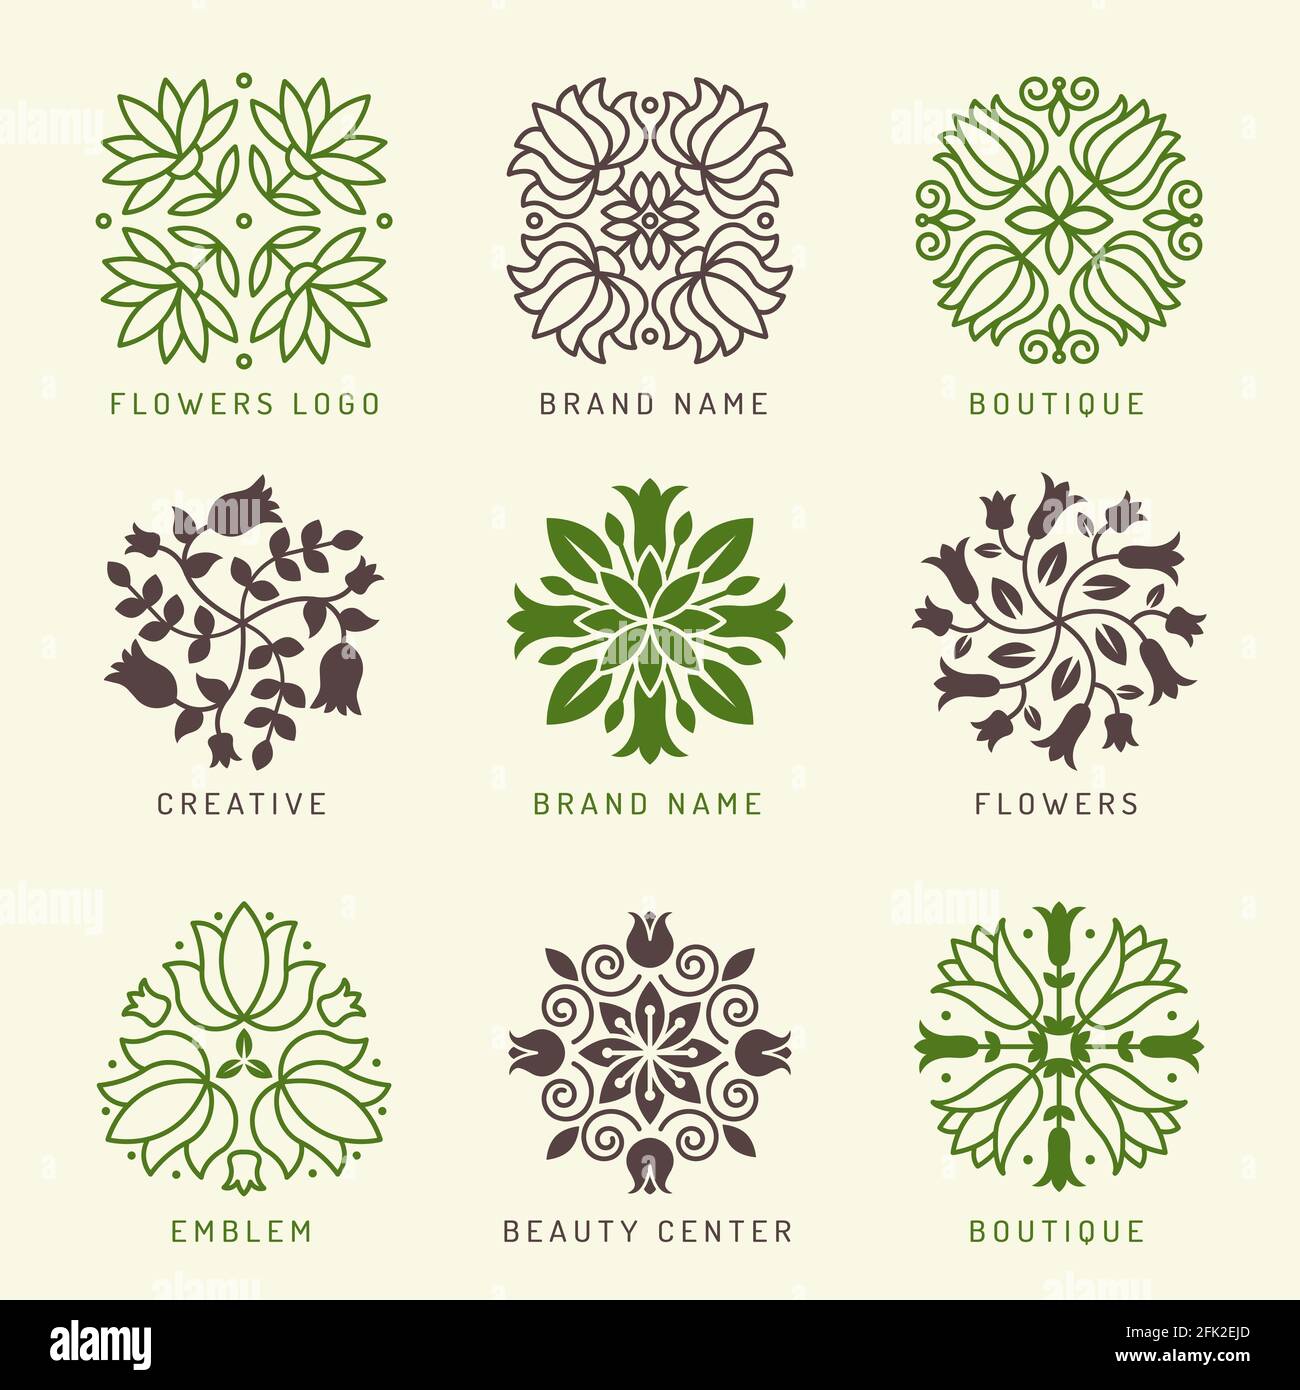 Logo floral. Eléments botaniques stylisés symboles de décoration feuilles et fleurs branches formes bien-être spa cosmétique vecteur logotype Illustration de Vecteur